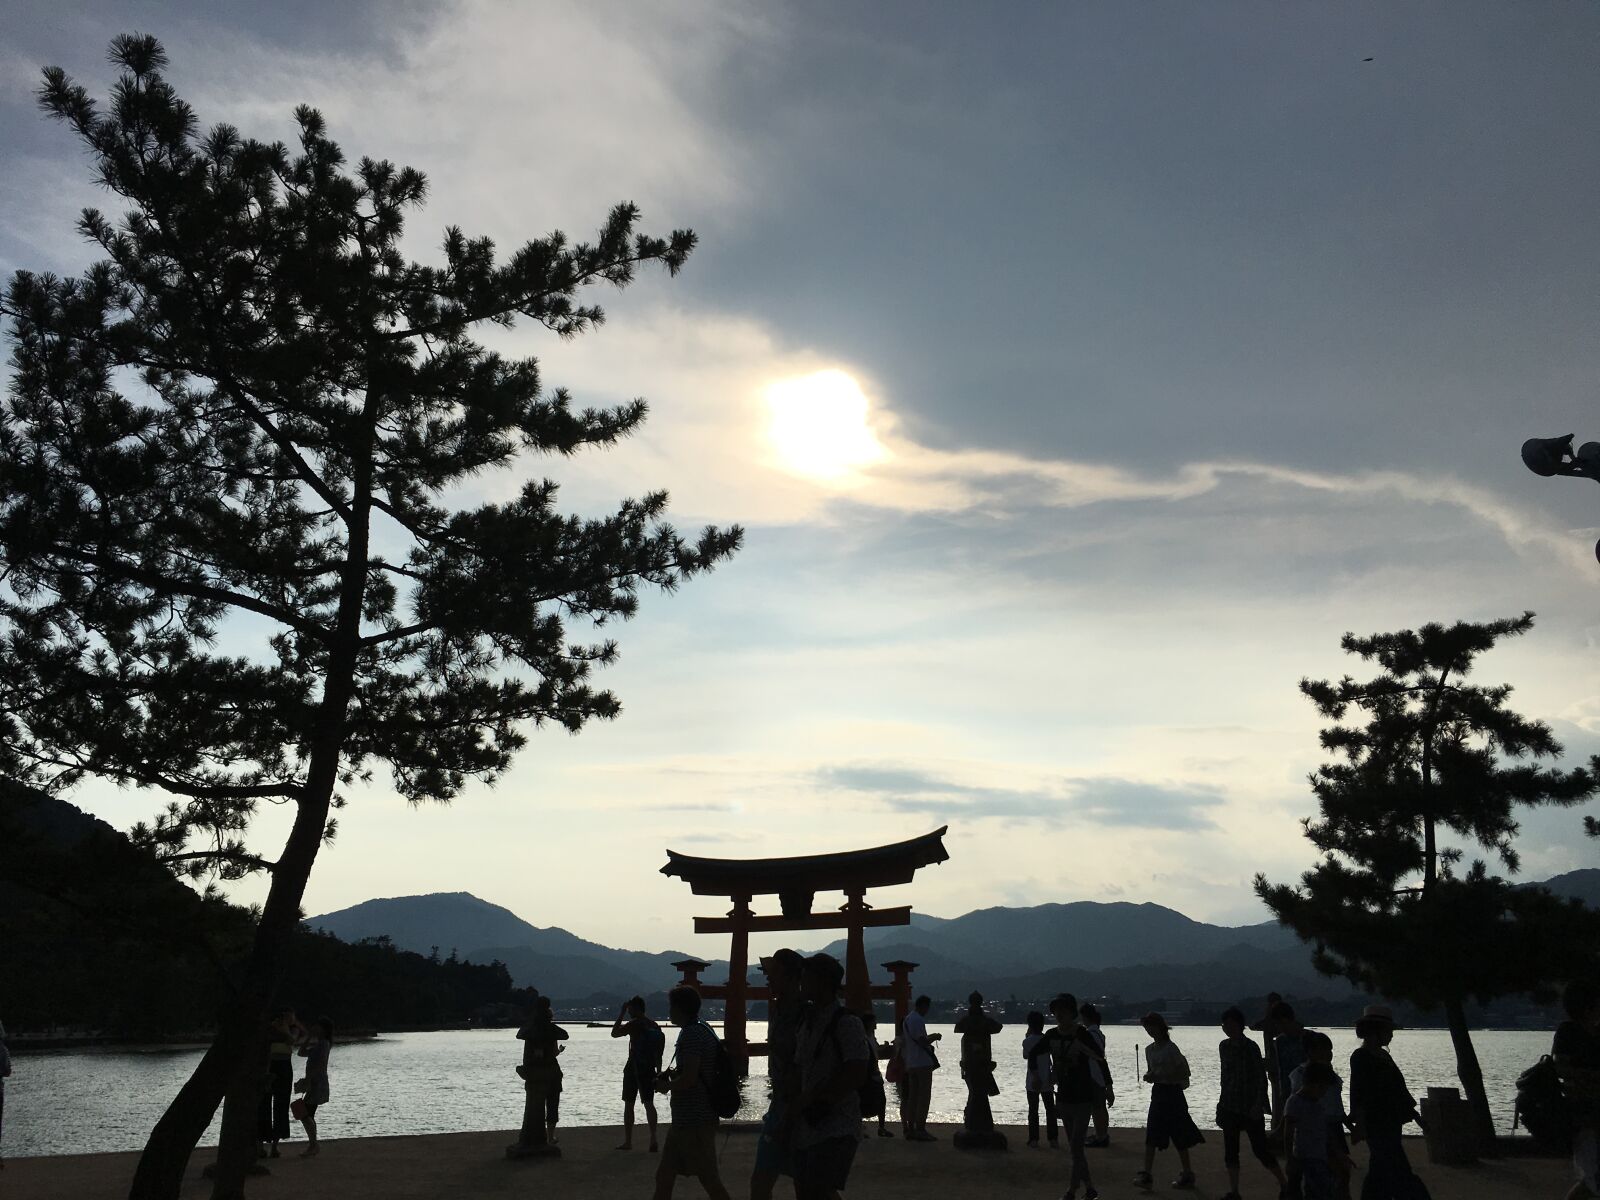 Apple iPhone 6s sample photo. Miyajima, itsukushima shinto shrine photography